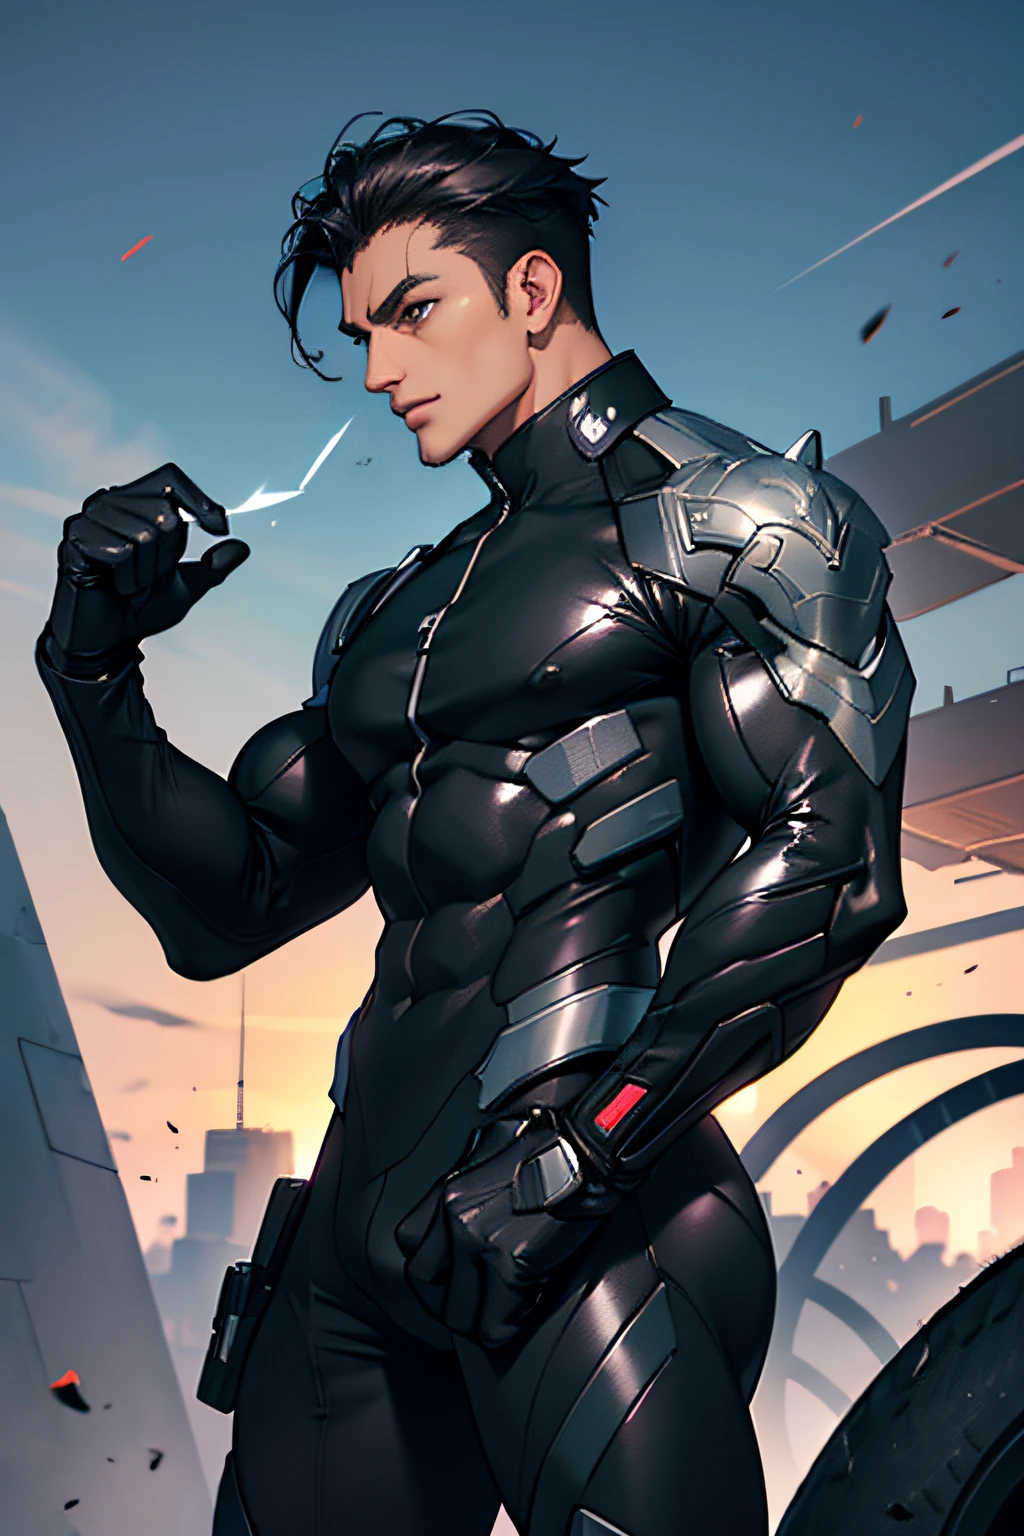 Mann, masculine Mann, Schwarzes Haar, muscular Mann, futuristische Kleidung, engen anzug, Schwarzer Anzug, Militäranzug, charmant